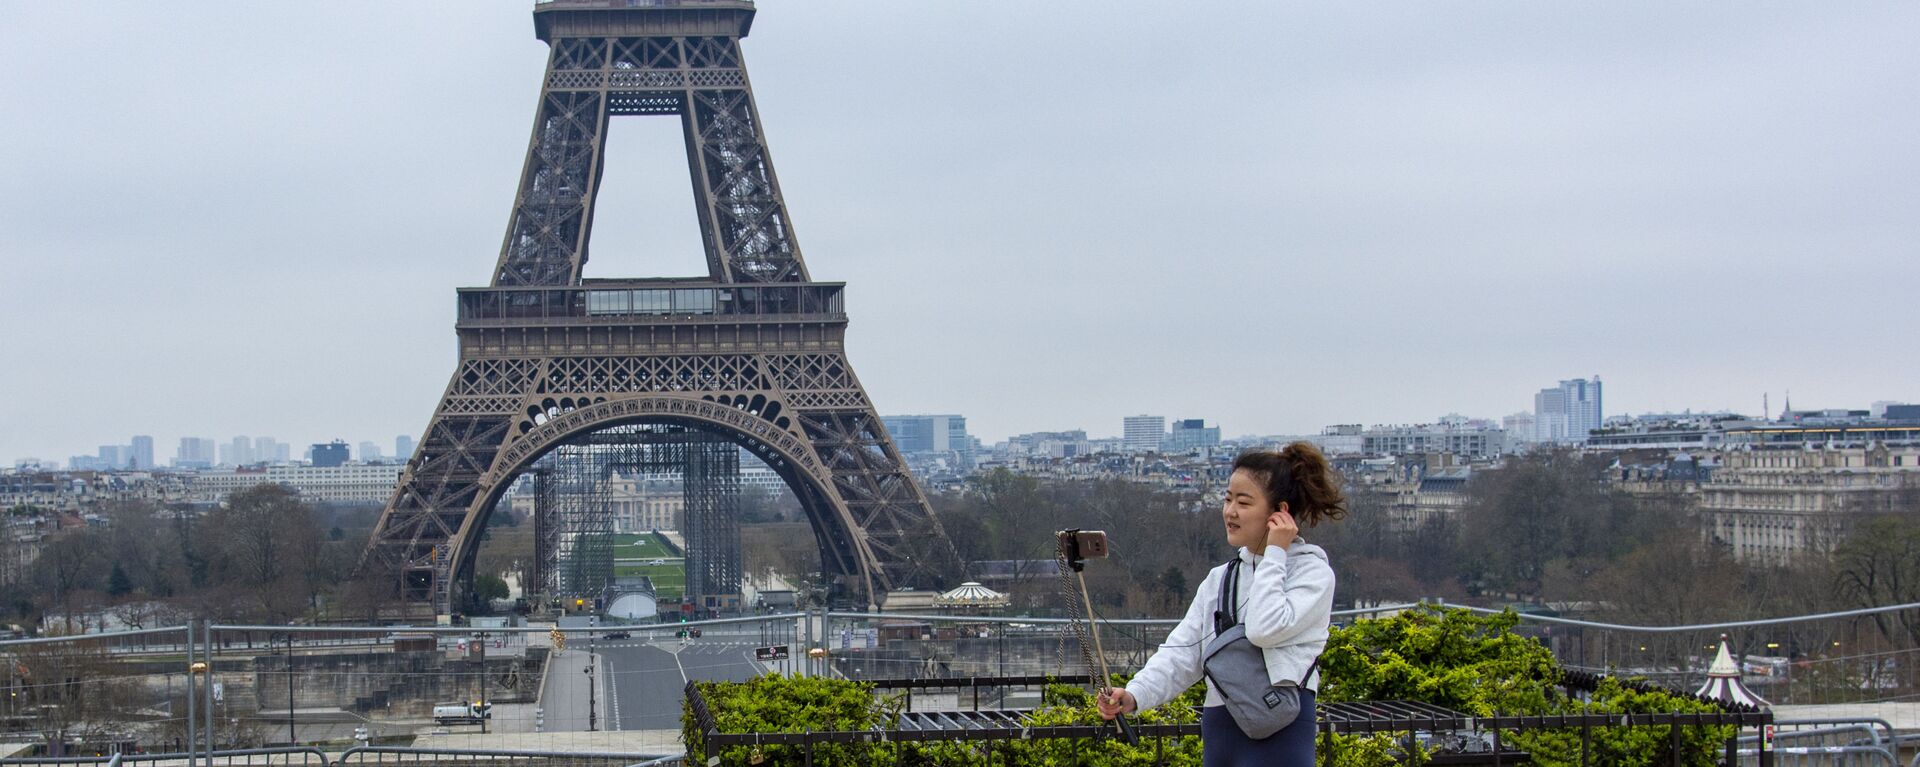 Туристка фотографируется на безлюдной площади Трокадеро у Эйфелевой башни в Париже - Sputnik Արմենիա, 1920, 25.07.2021